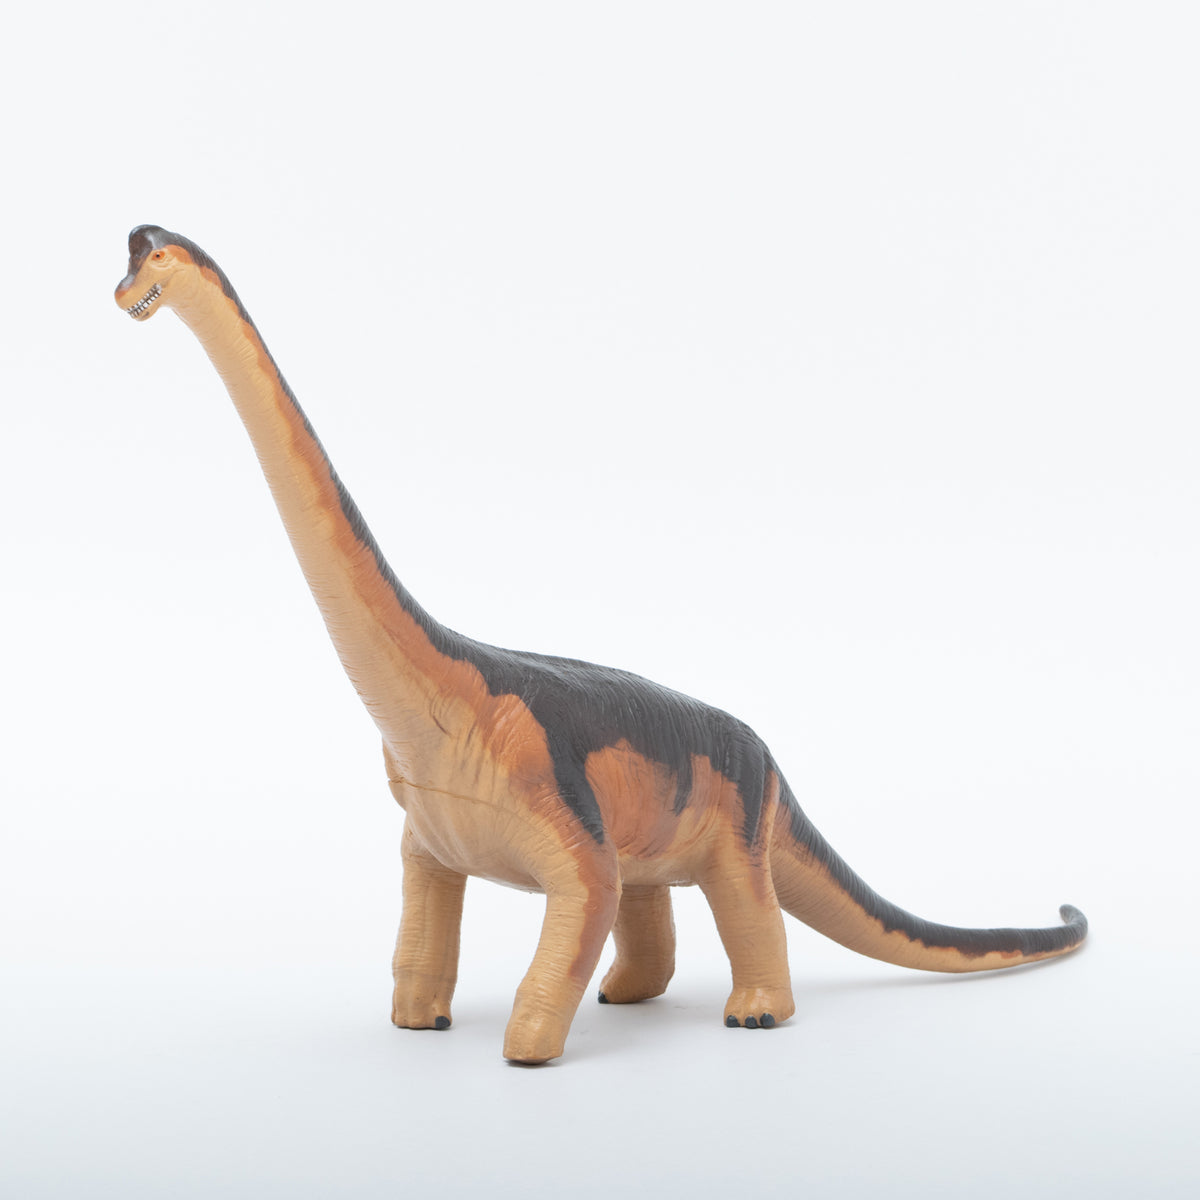 ブラキオサウルス ソフトモデル(FDW-008) i8my1cf